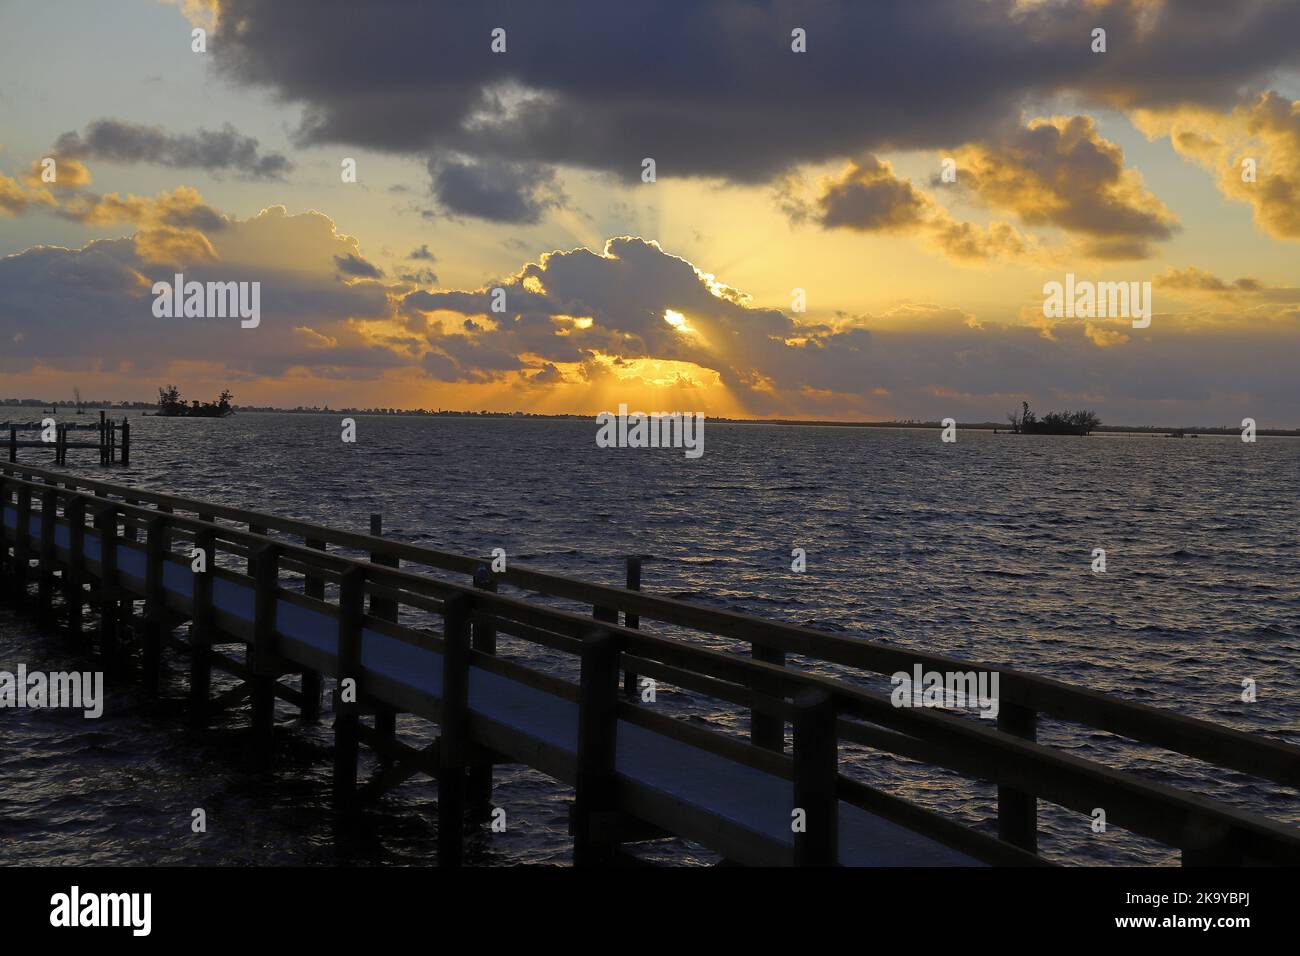 Striking sunrise over the sea at Sebastian, Florida Stock Photo